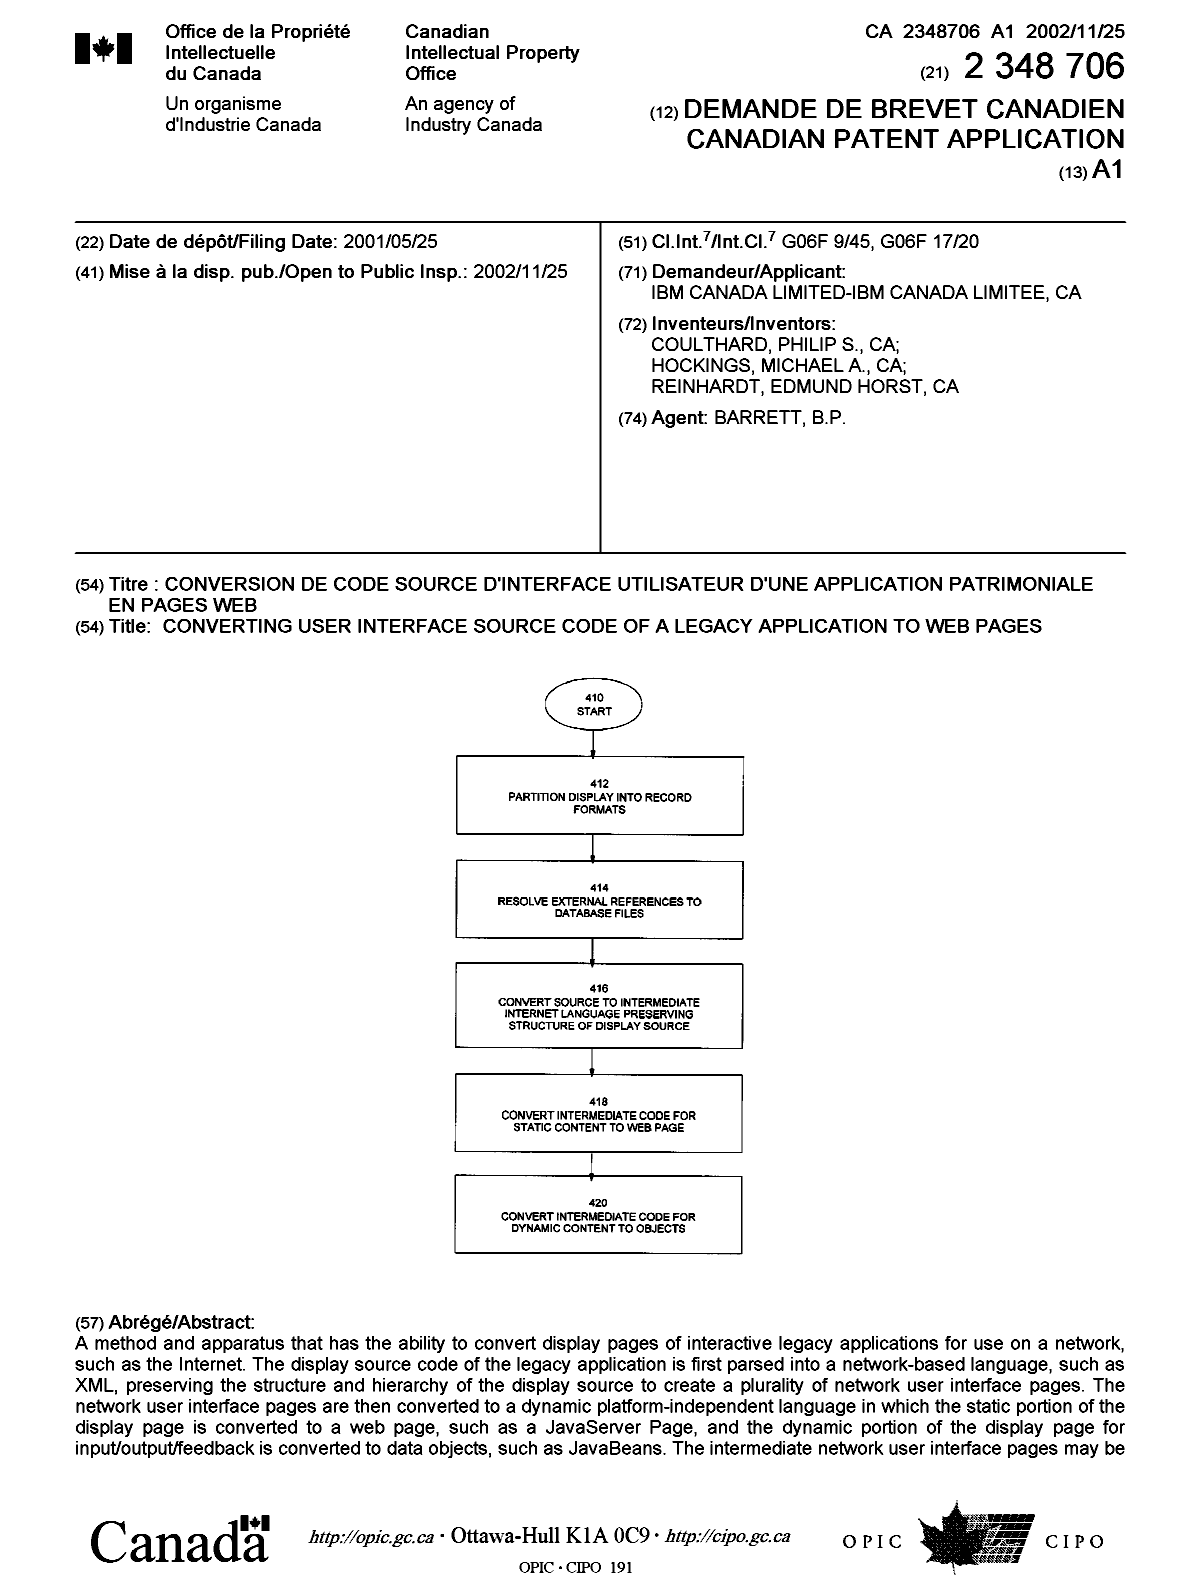 Document de brevet canadien 2348706. Page couverture 20021115. Image 1 de 2